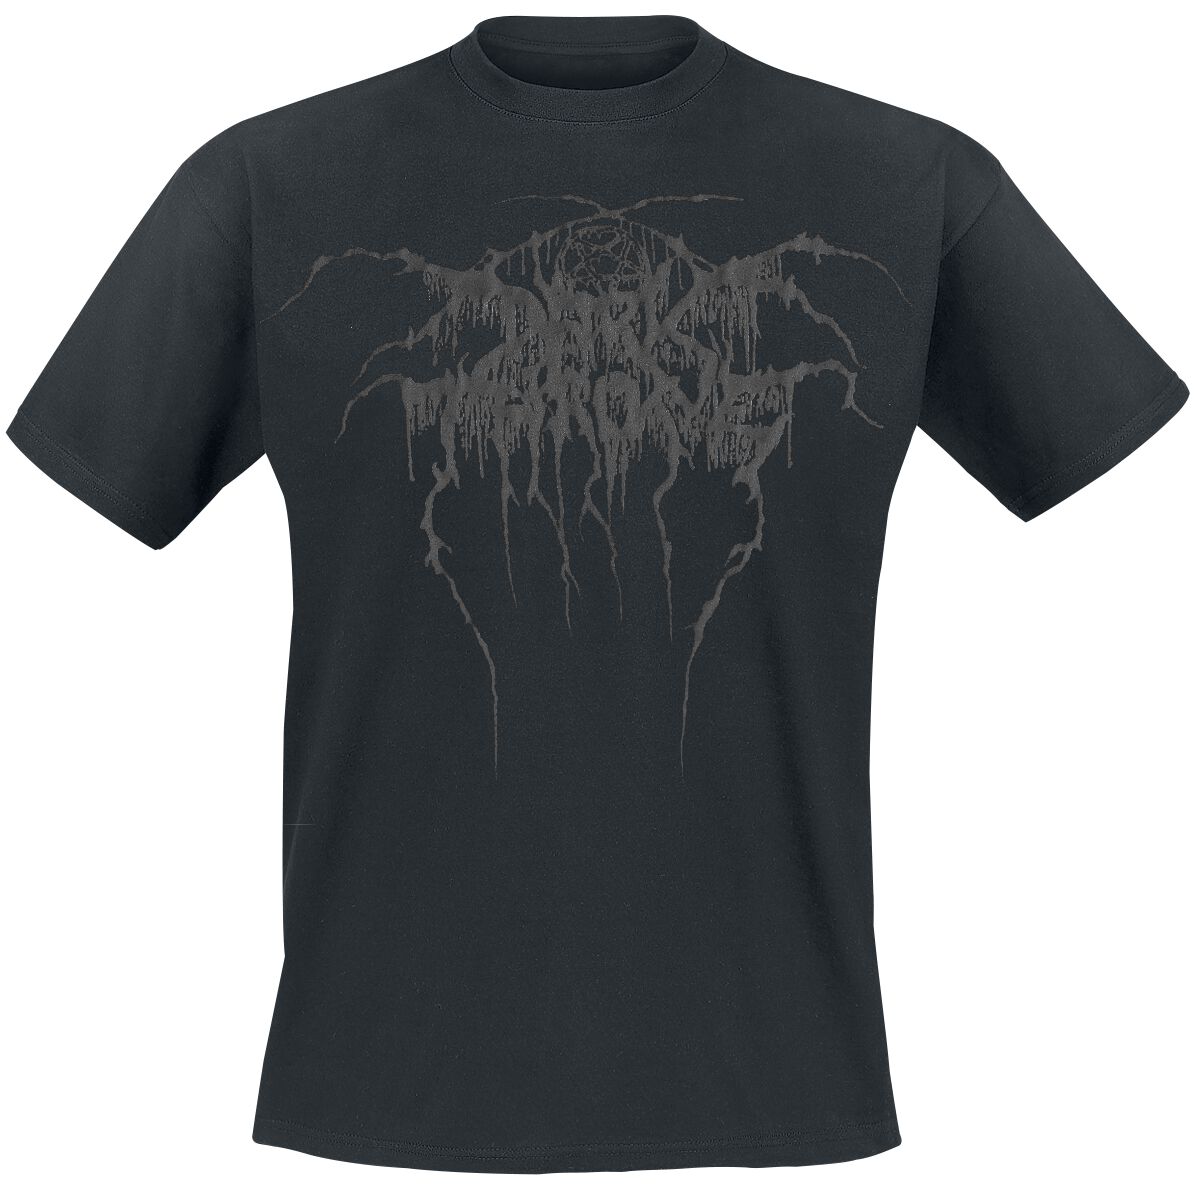 Darkthrone True Norwegian Black Metal T Shirt schwarz  - Onlineshop EMP